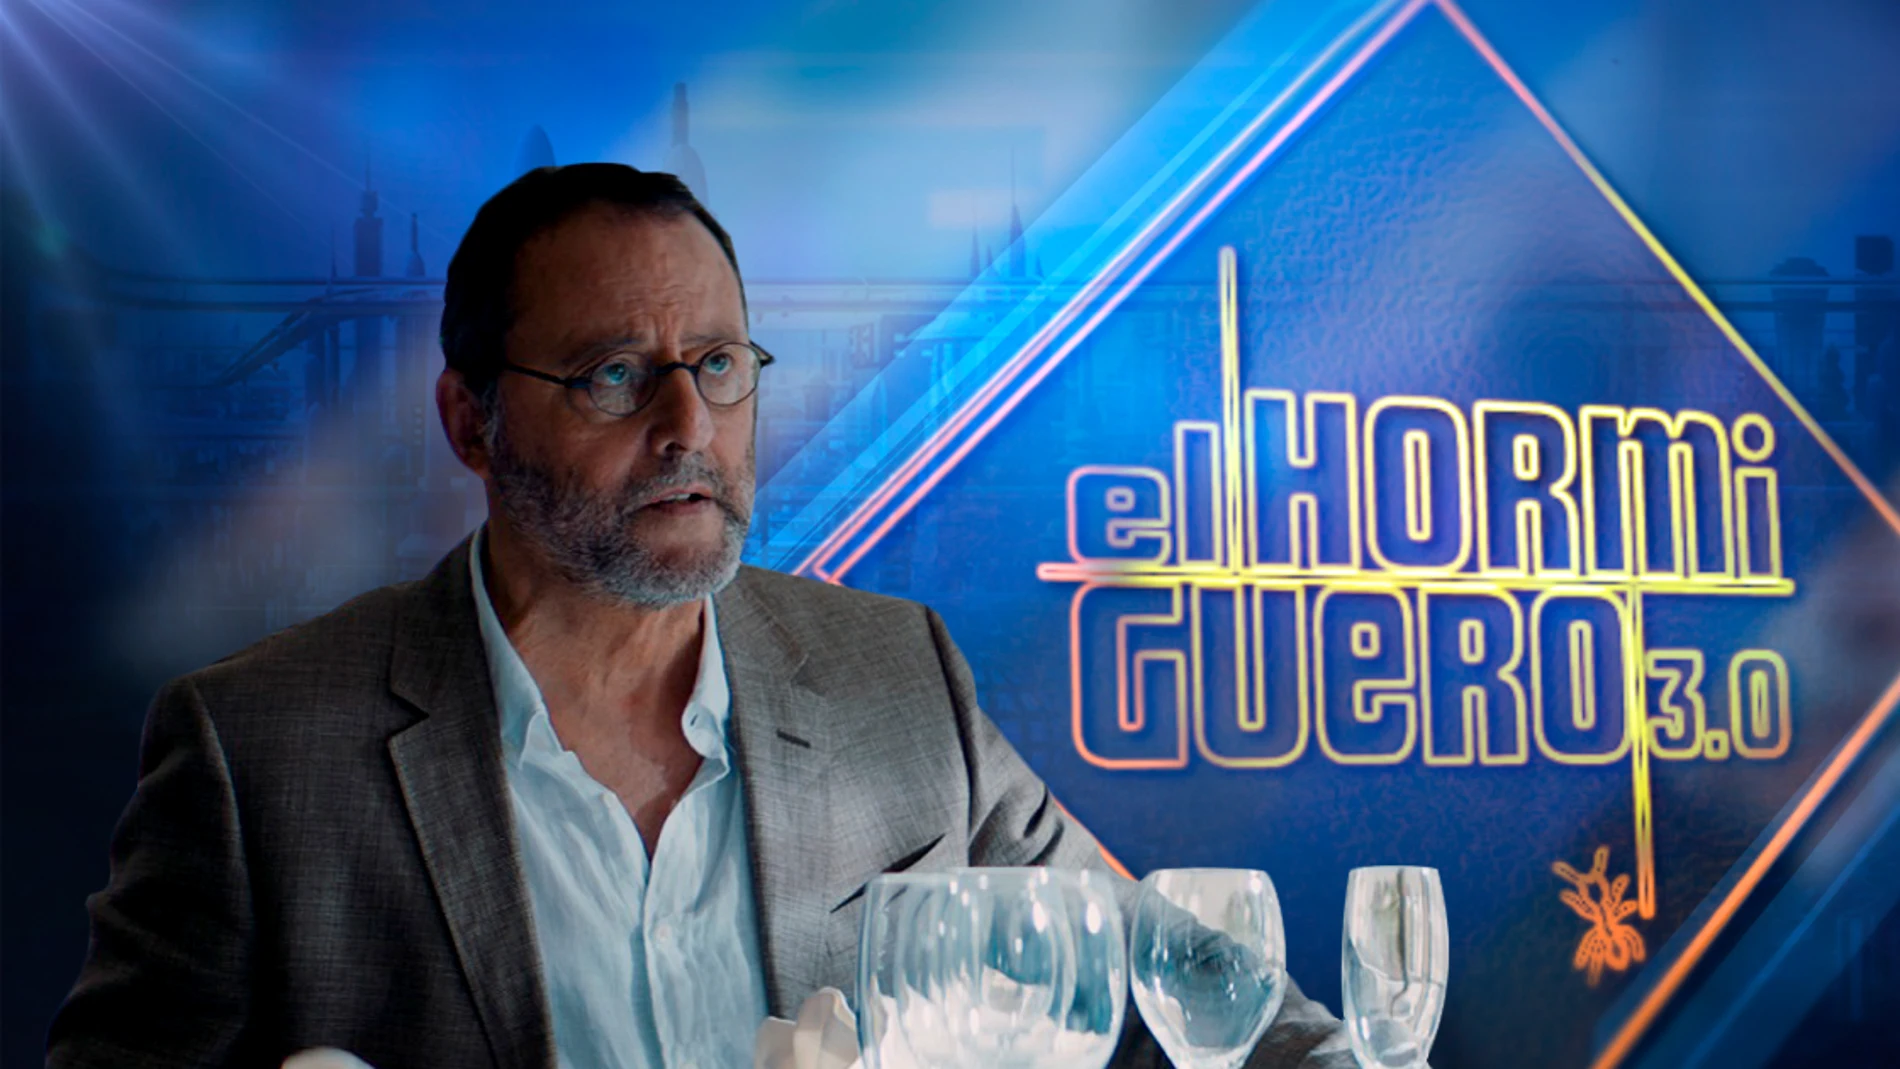 Jean Reno en 'El Hormiguero 3.0'